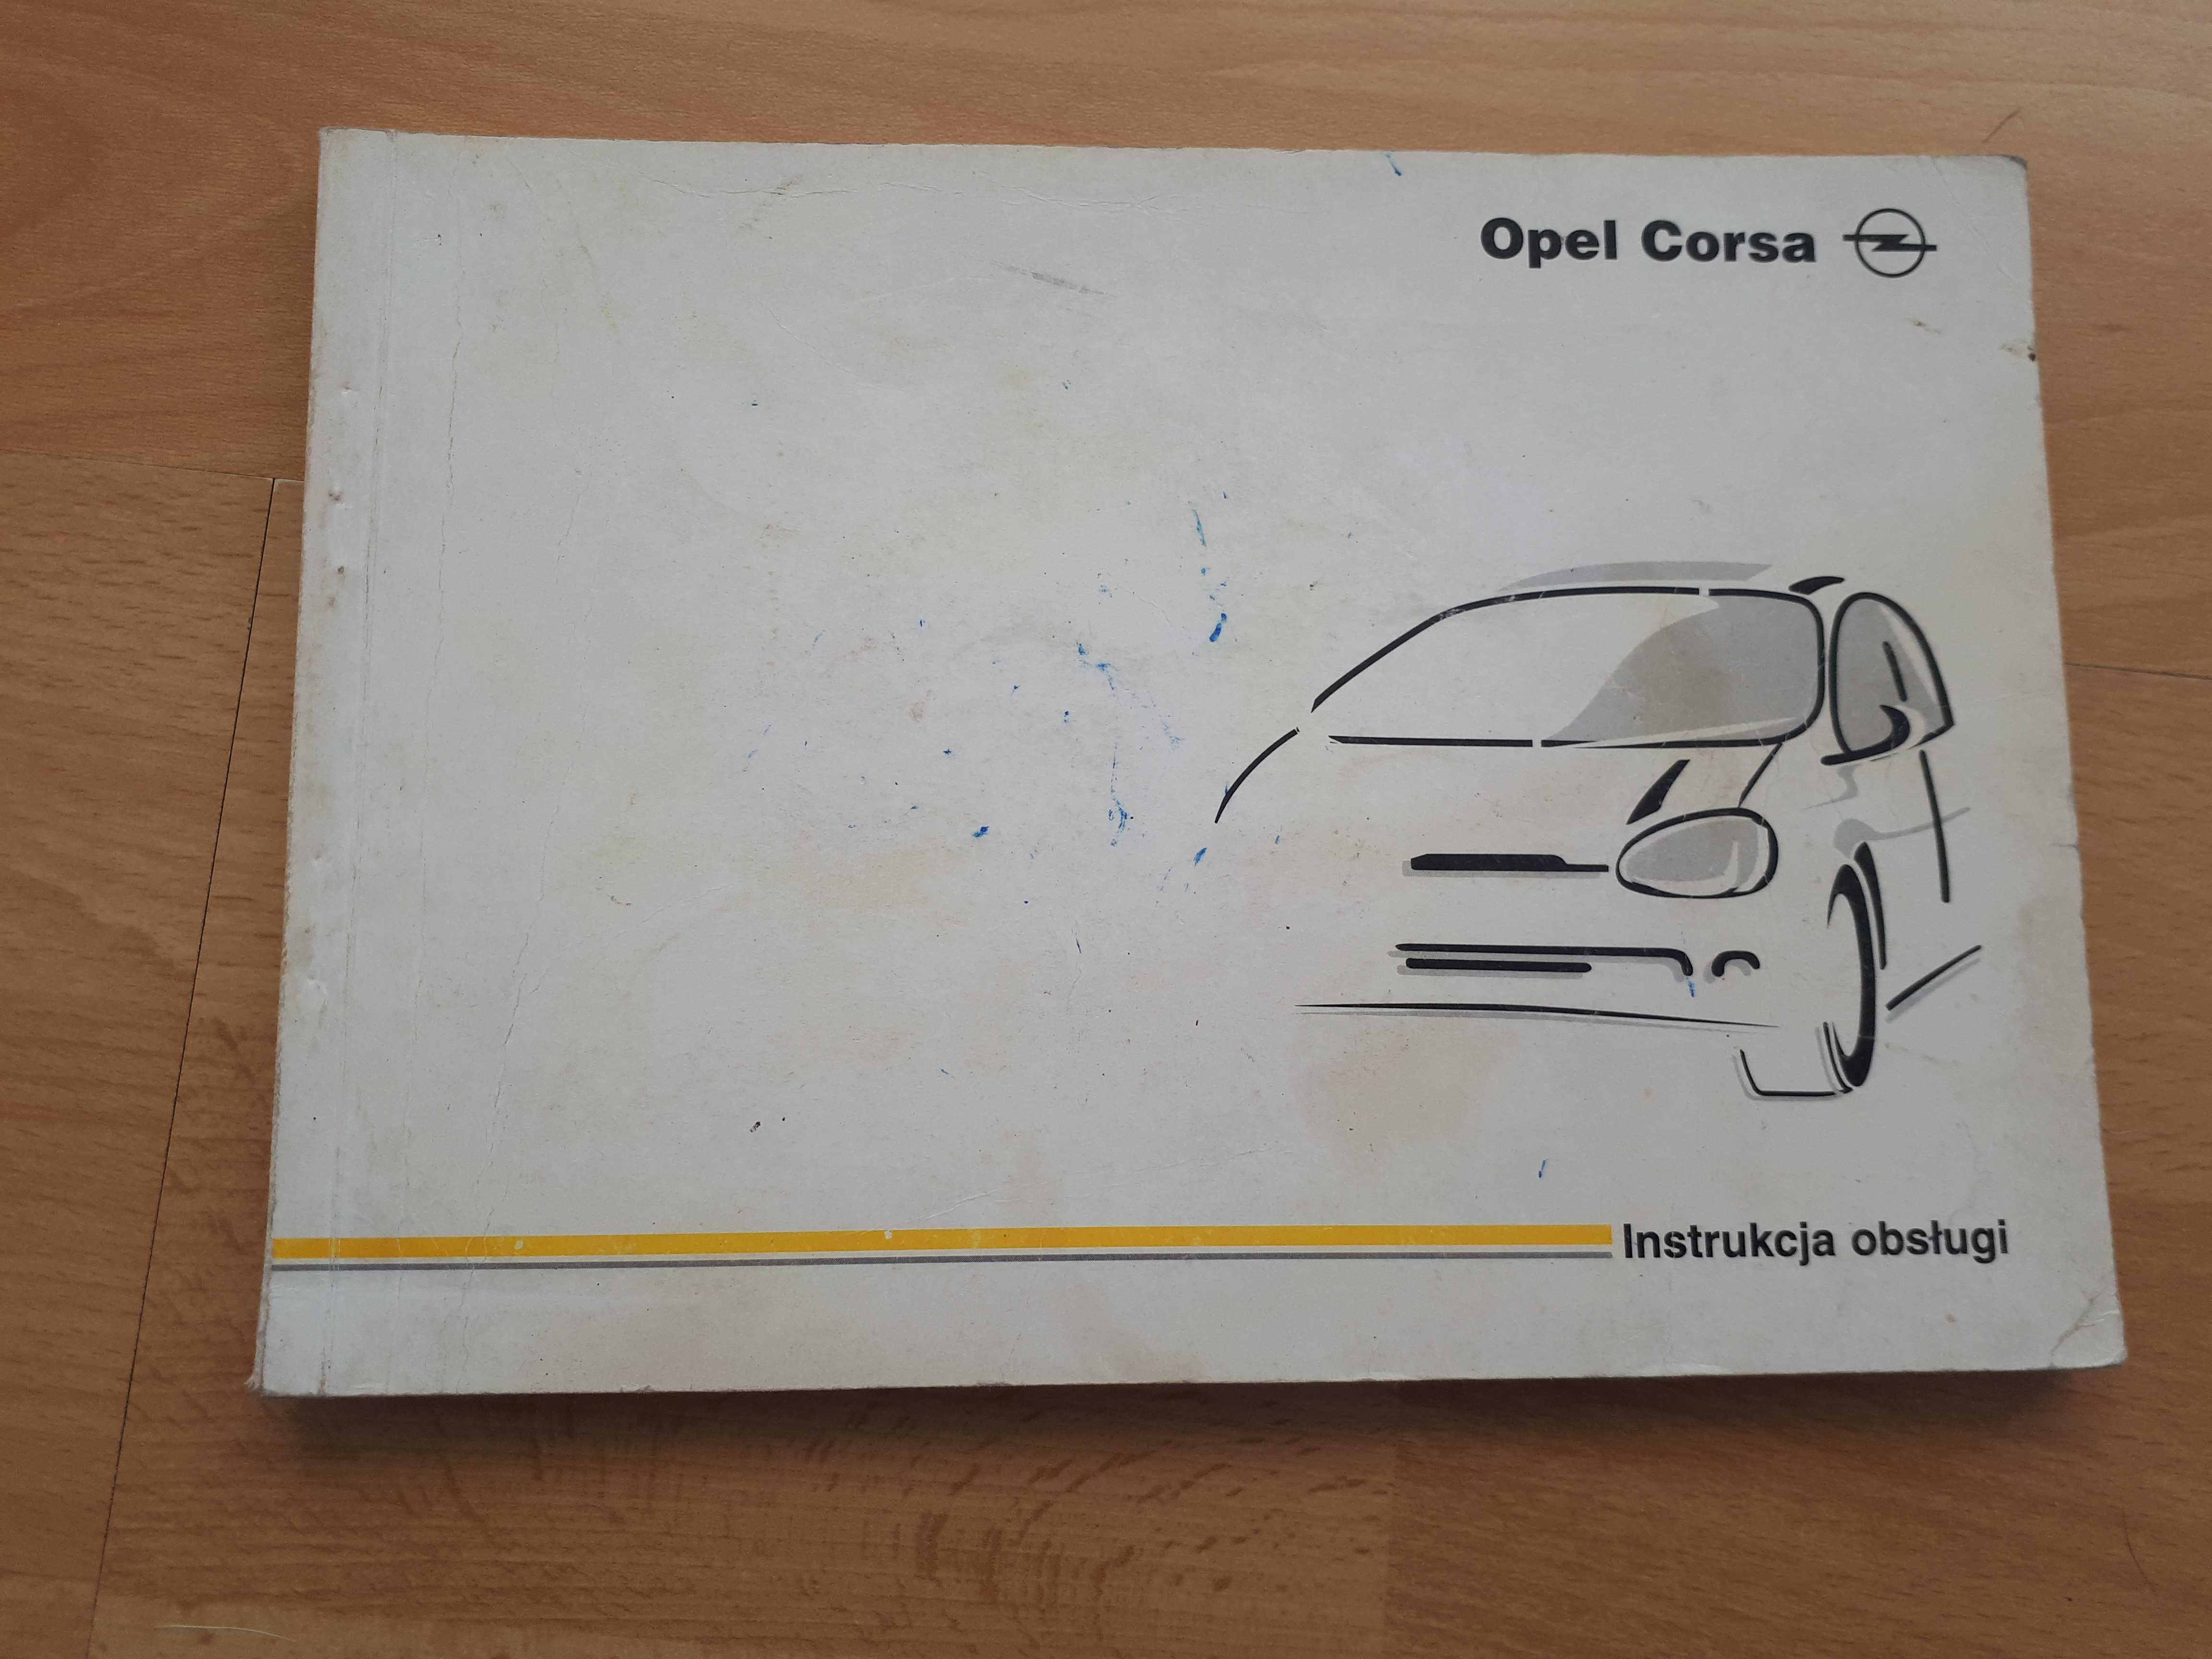 Opel Corsa instrukcja obsługi 1988 rok.